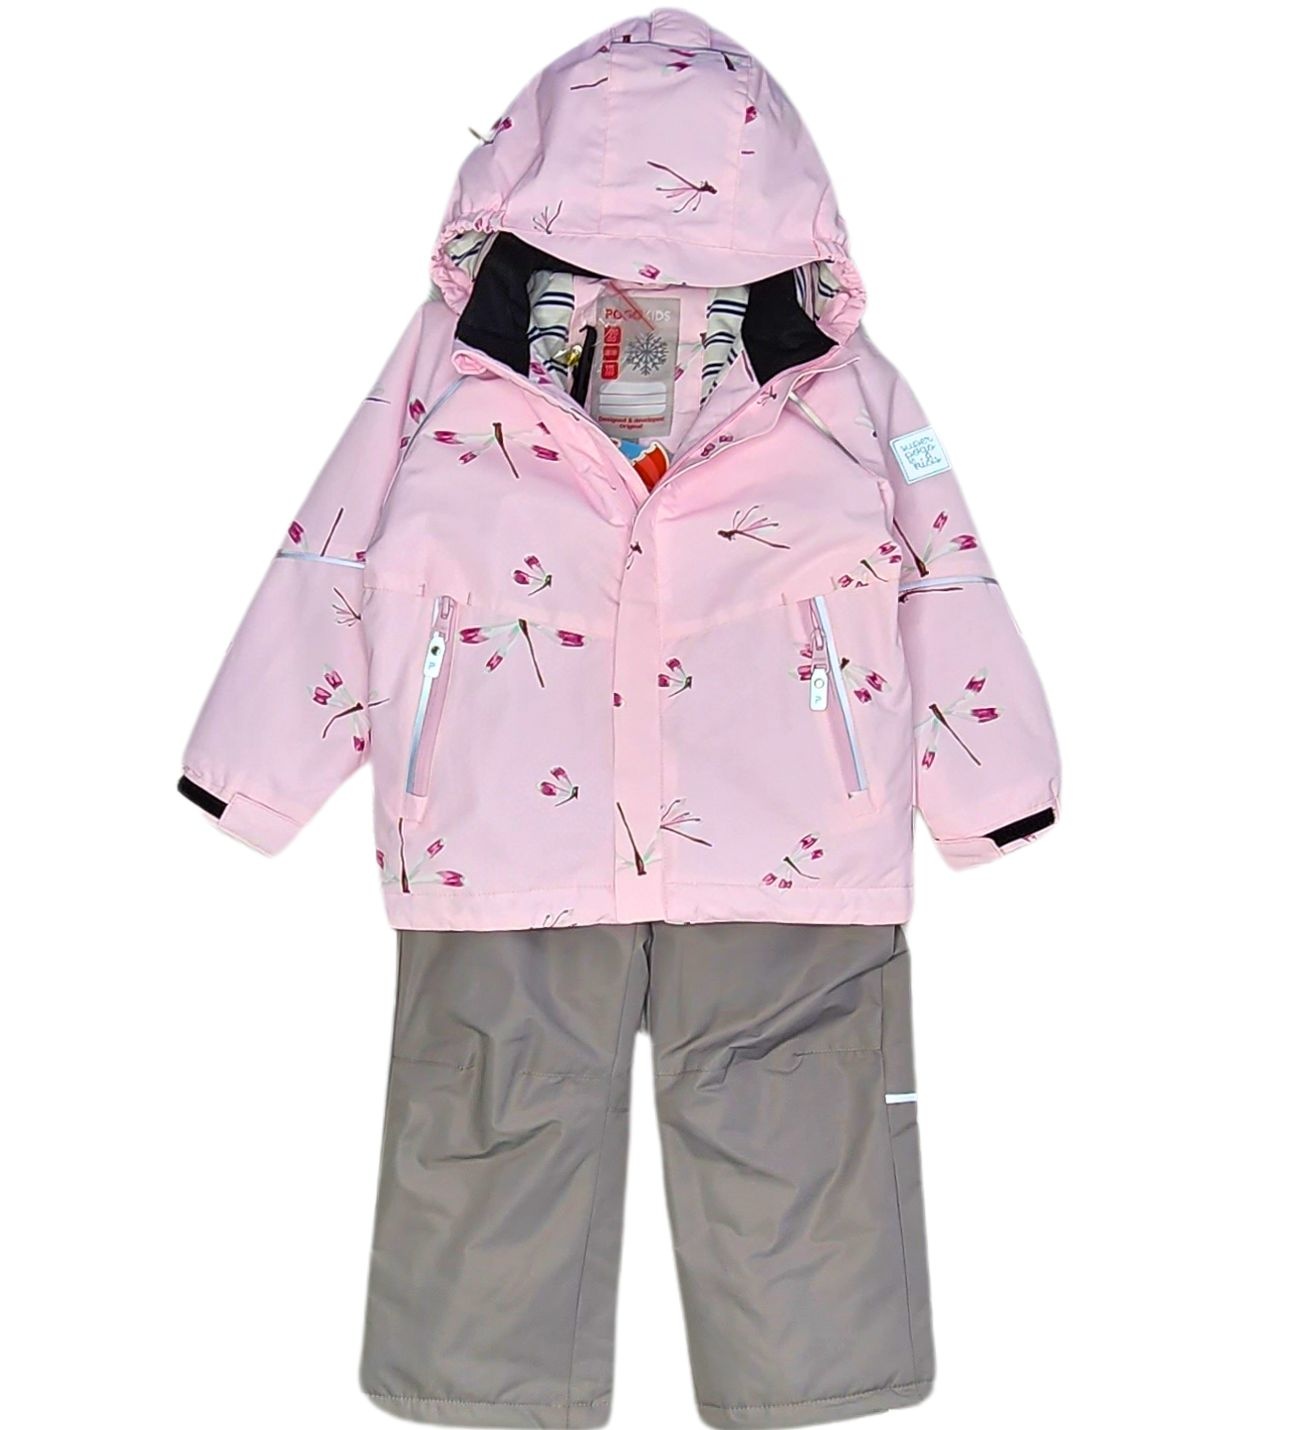 Комплект верхней одежды PogoKids PG88268, розовый, 98